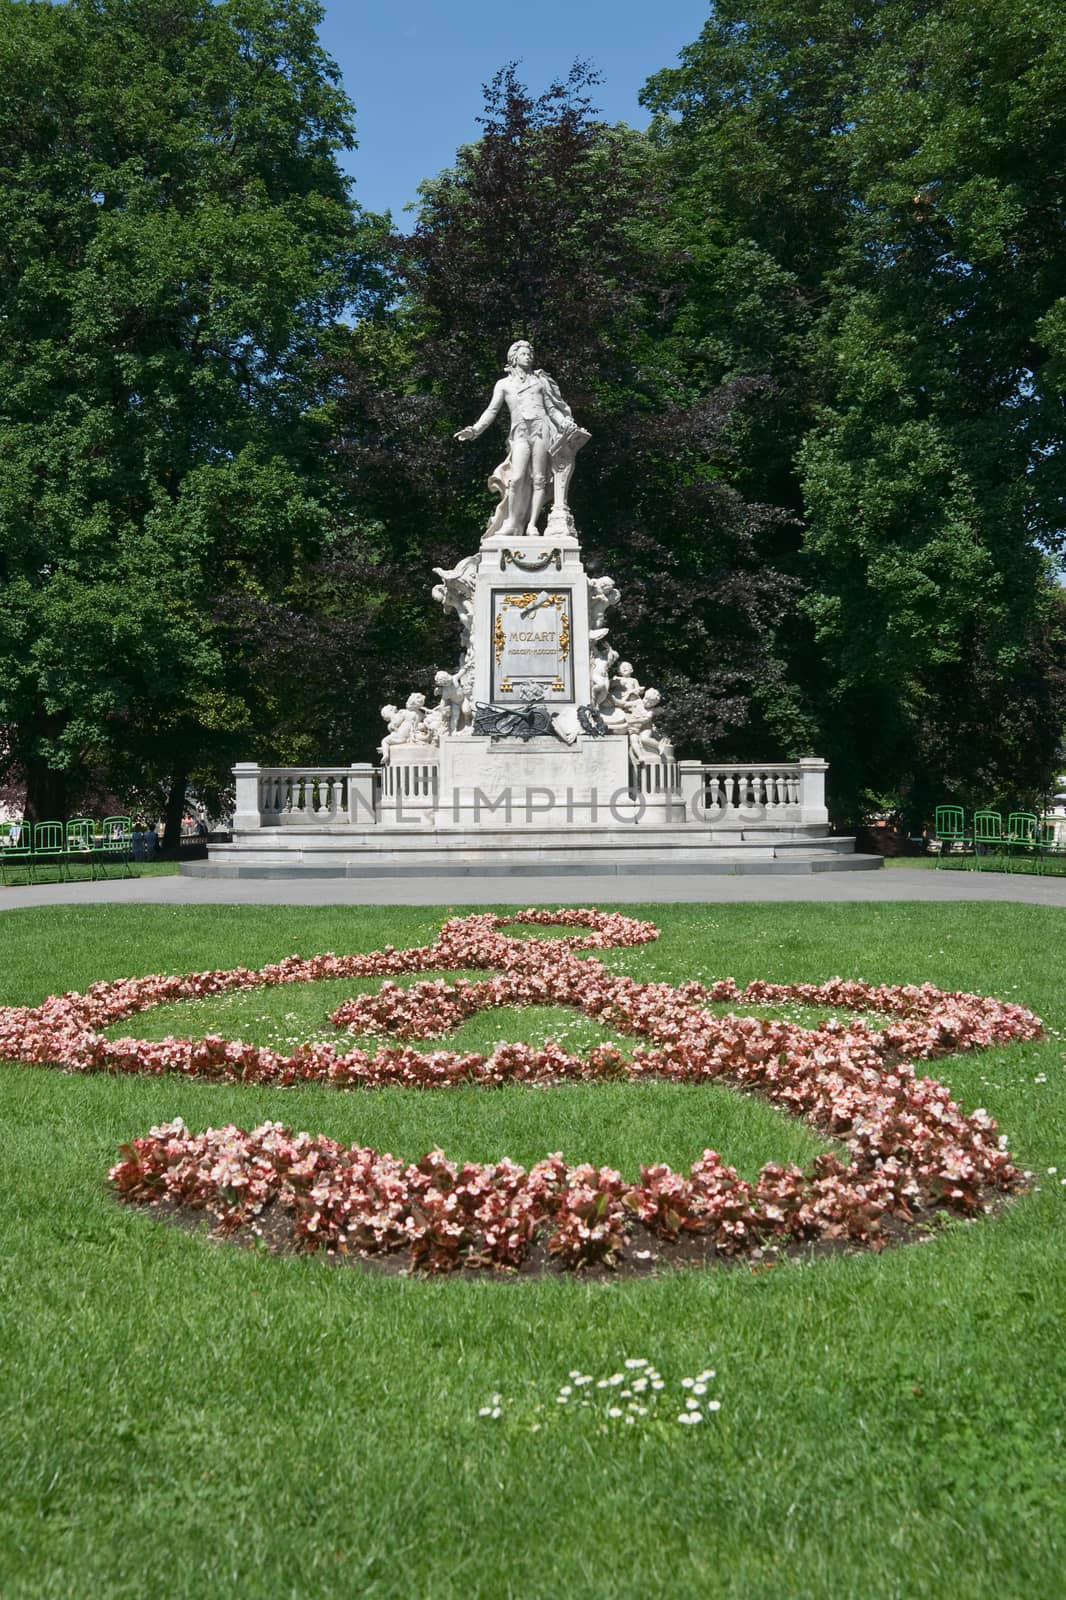 Mozart monument in Vienna by vkstudio